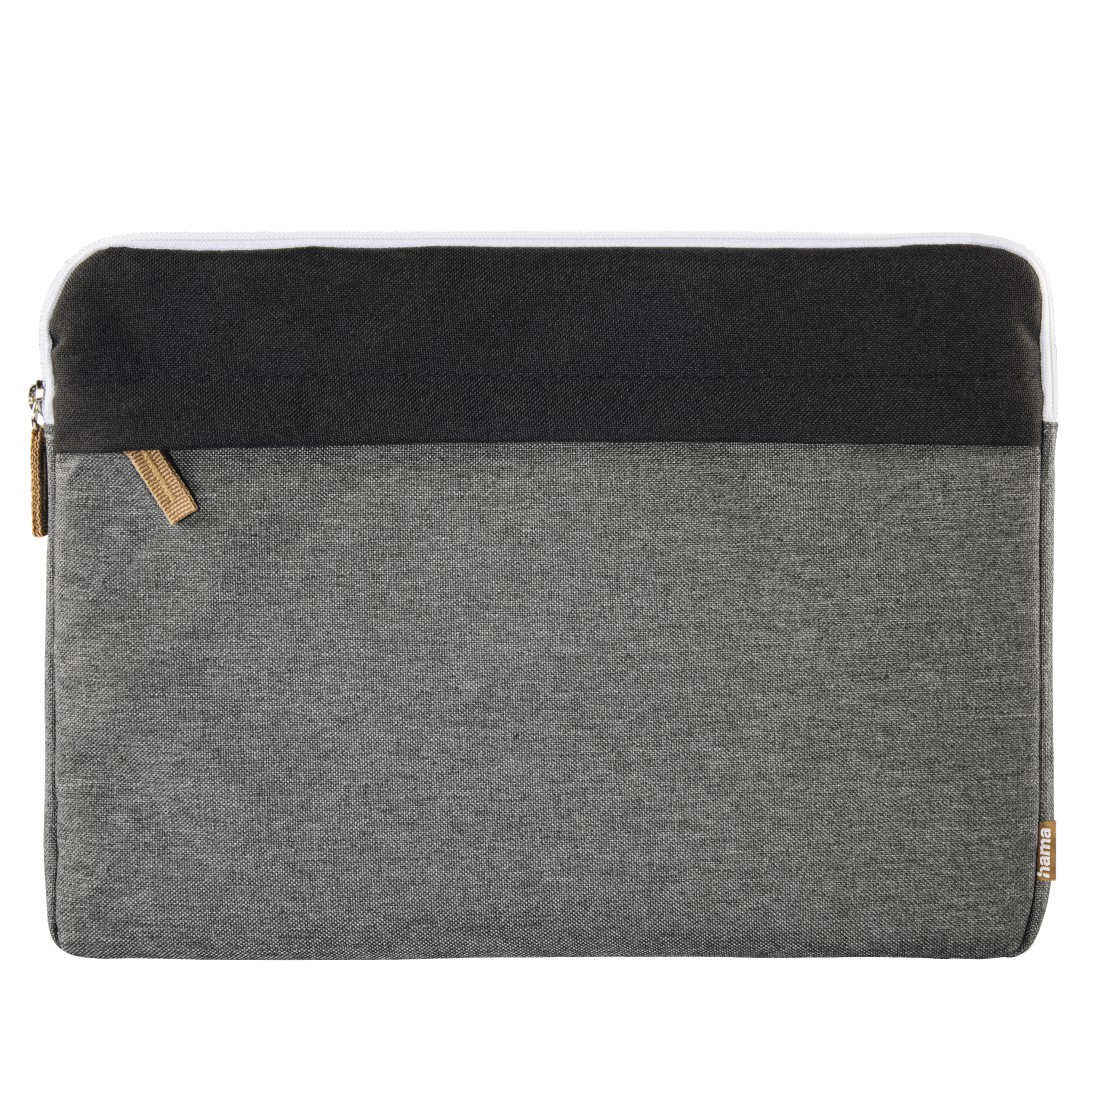 HAMA Florenz 13.3 Zoll Notebooktasche Sleeve Schwarz/Grau Polyester, für Universal